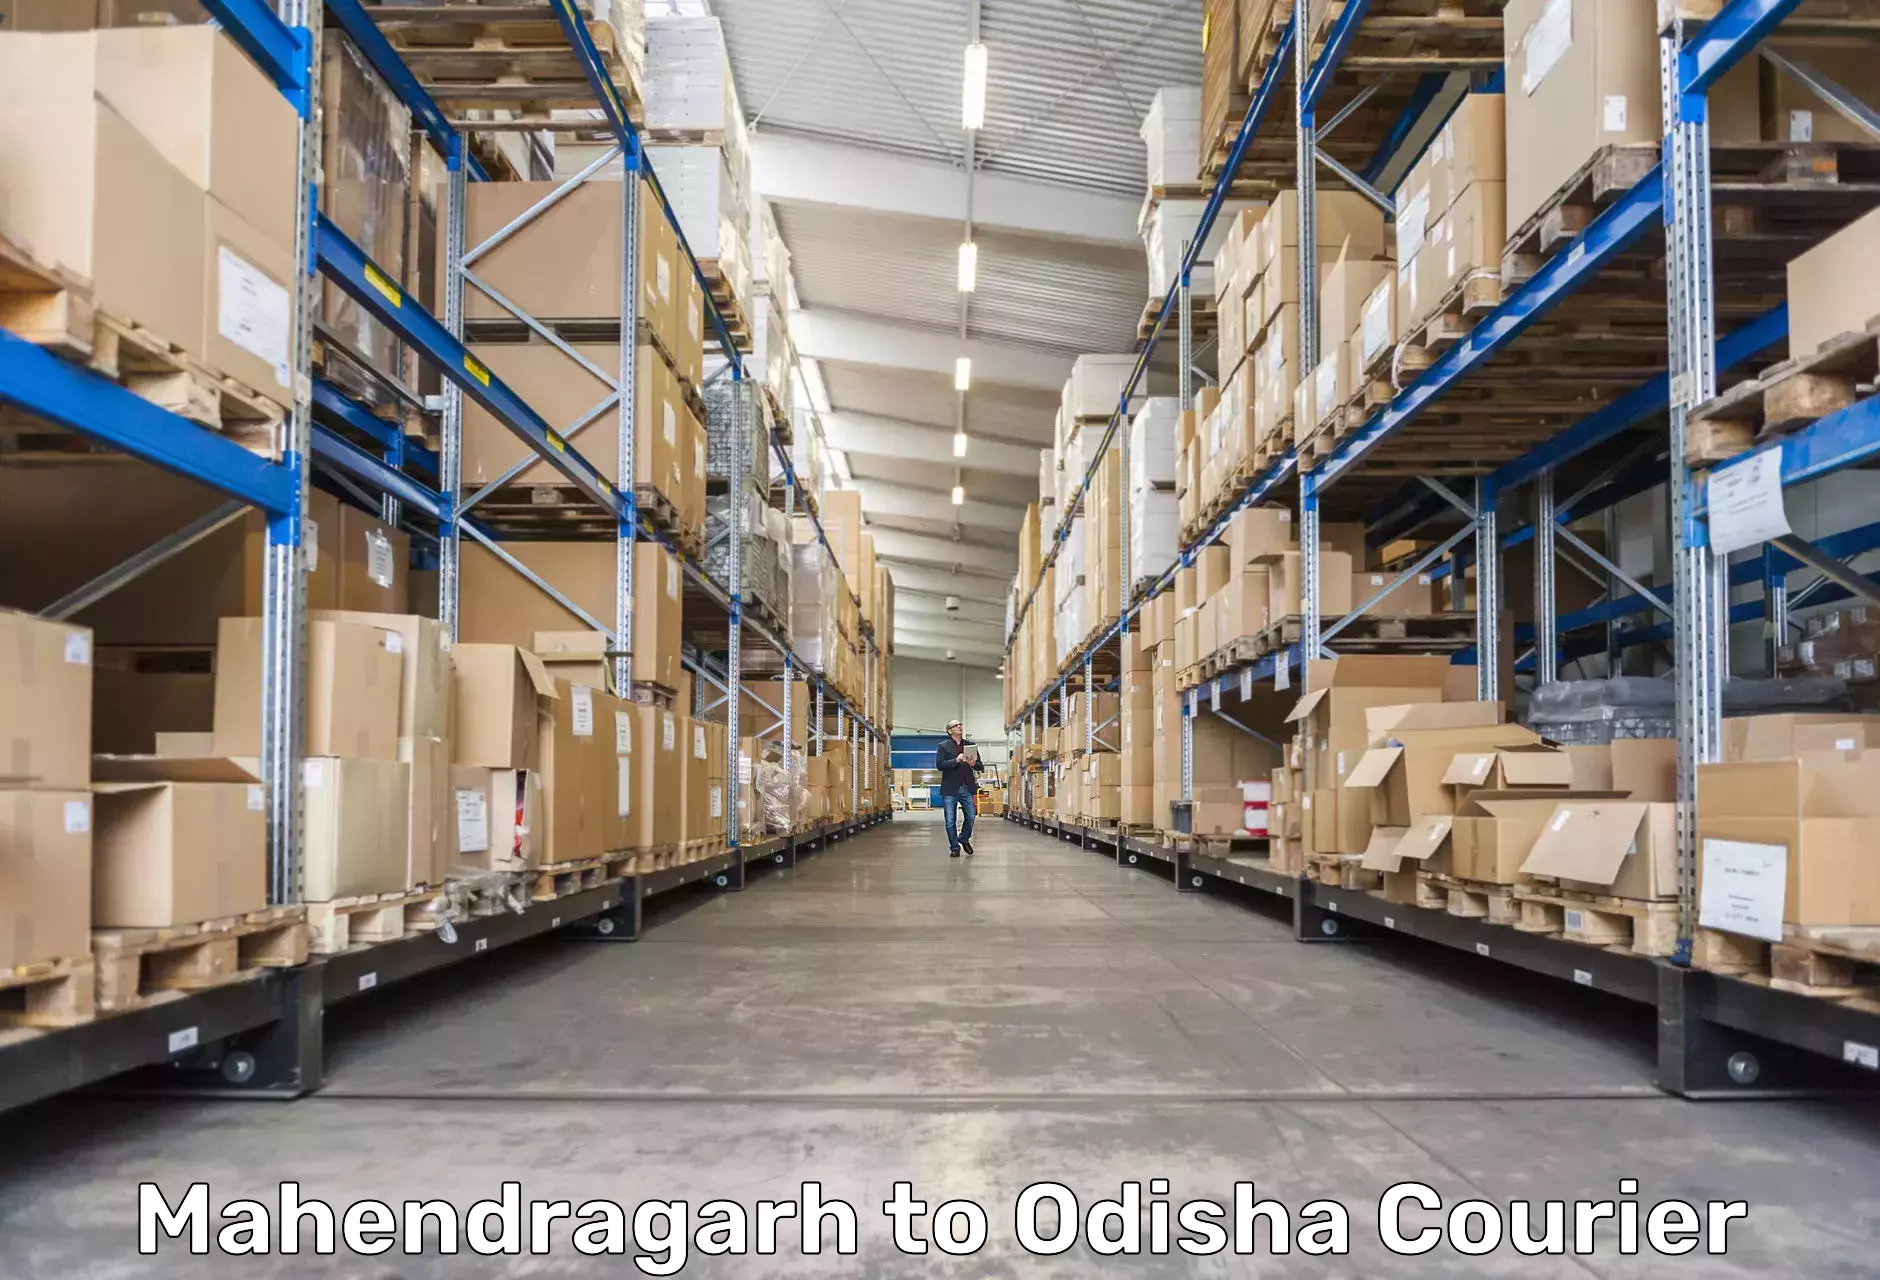 Local delivery service Mahendragarh to Odisha